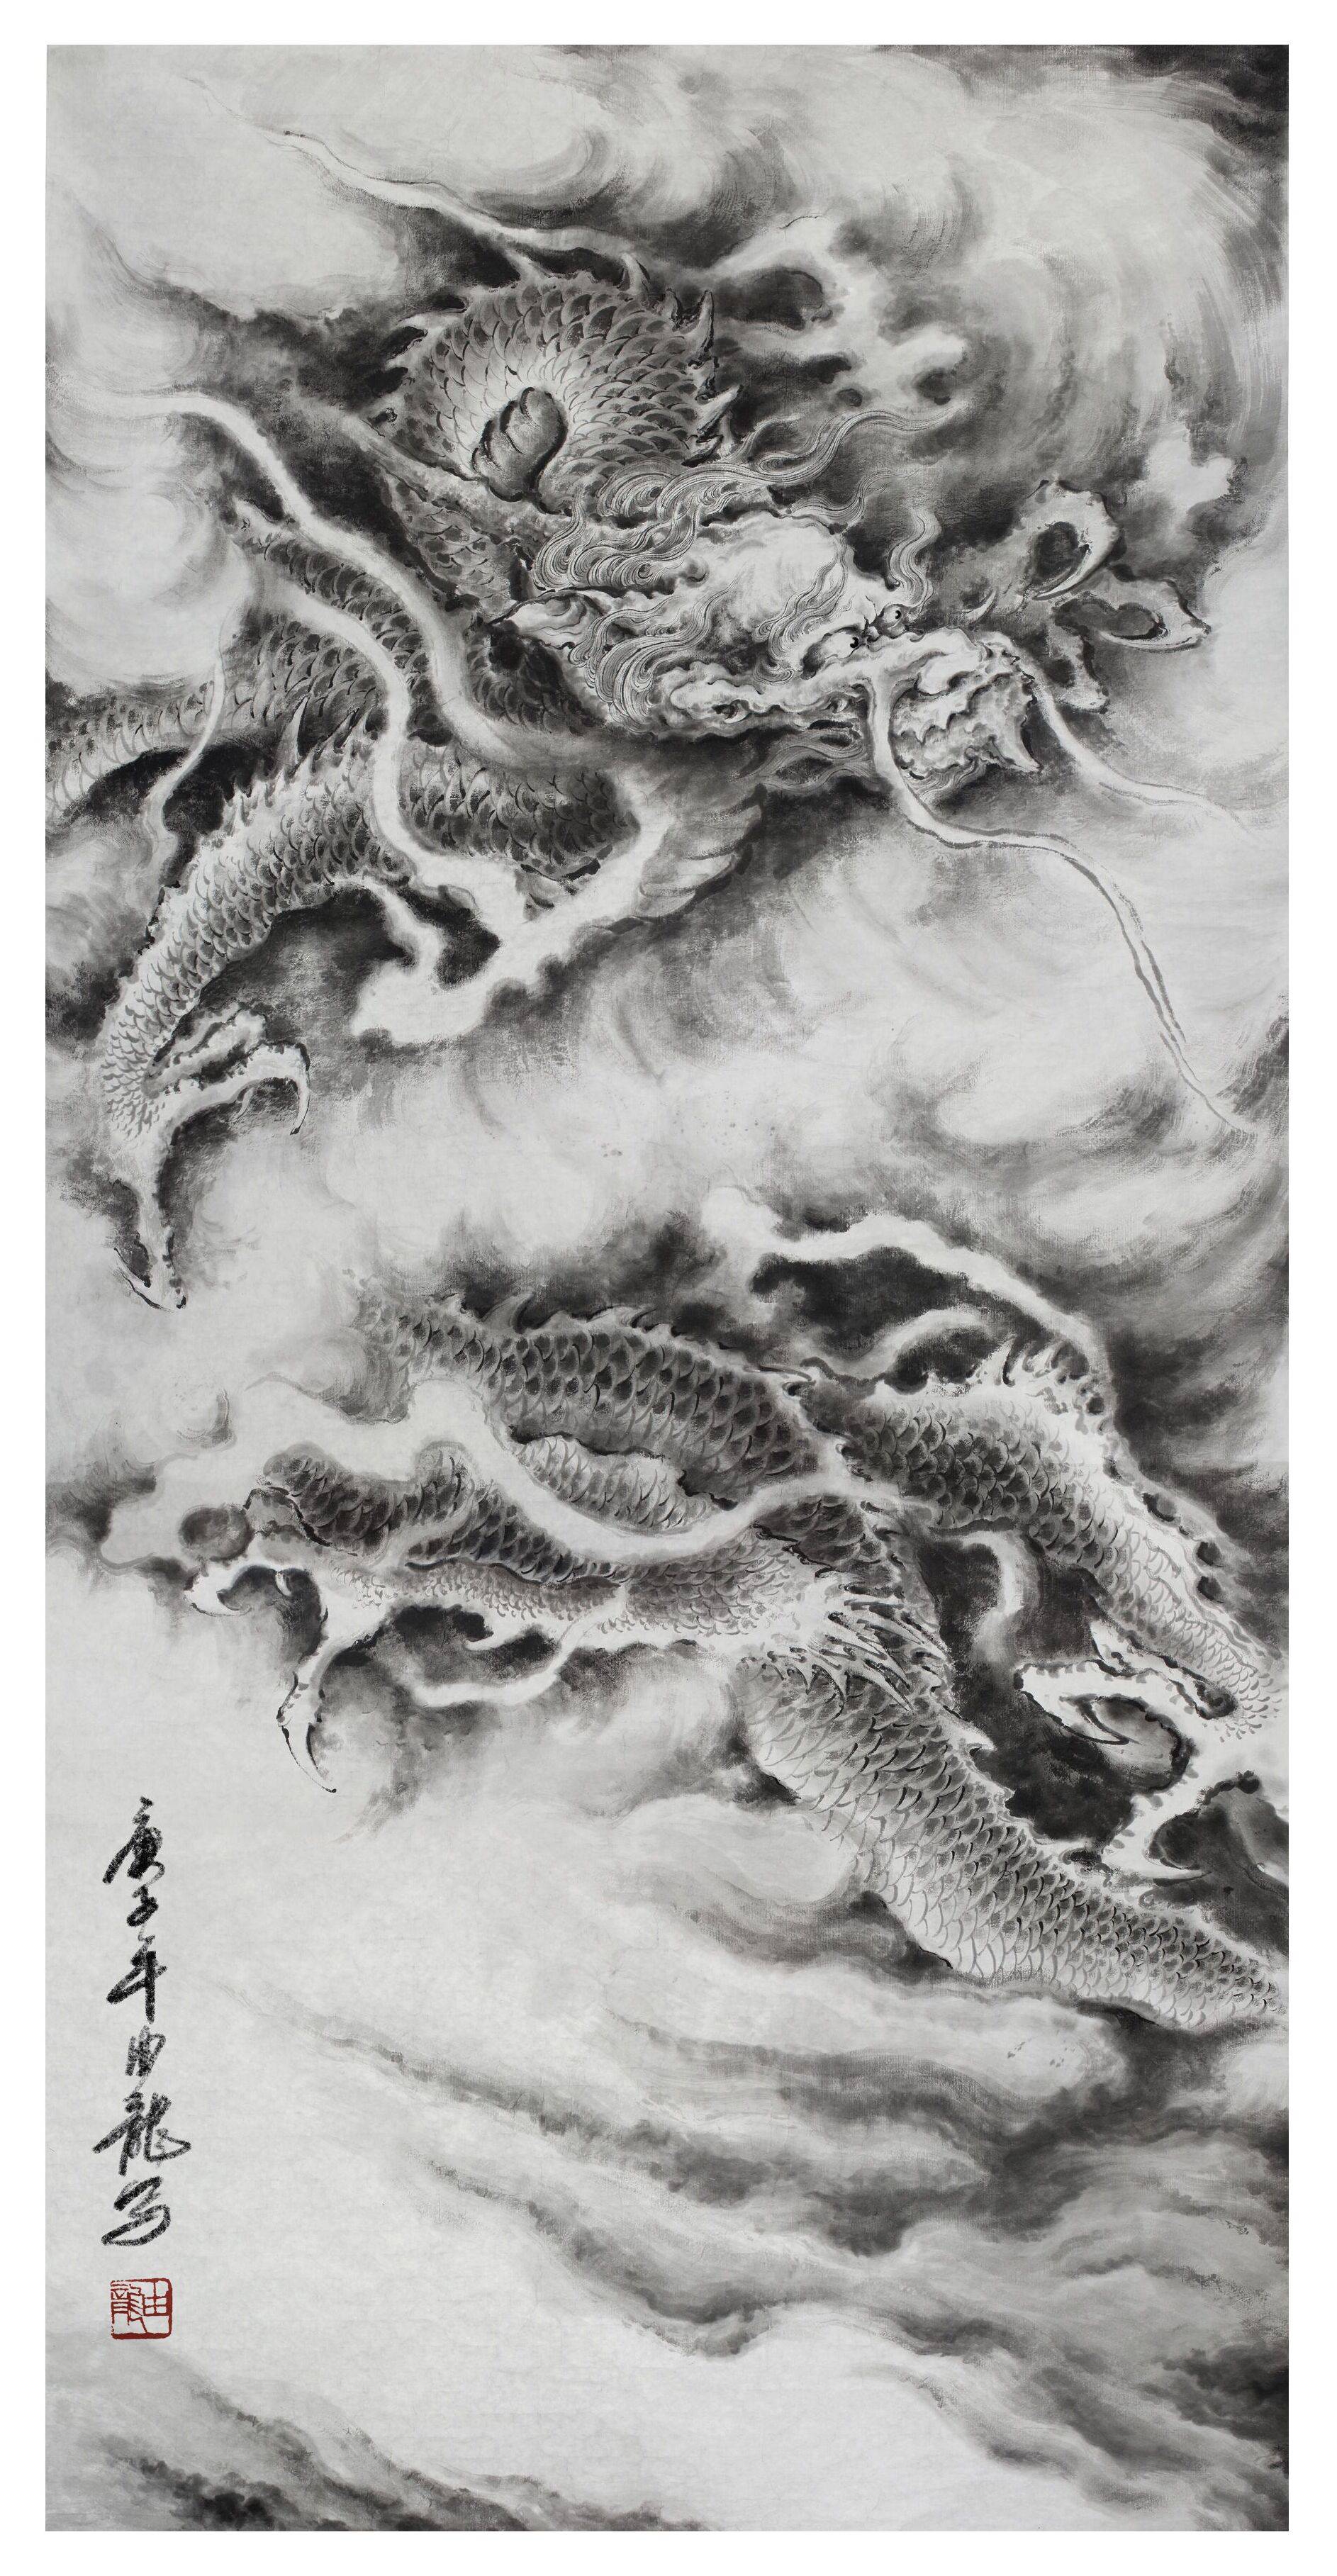 中国画龙第一人图片